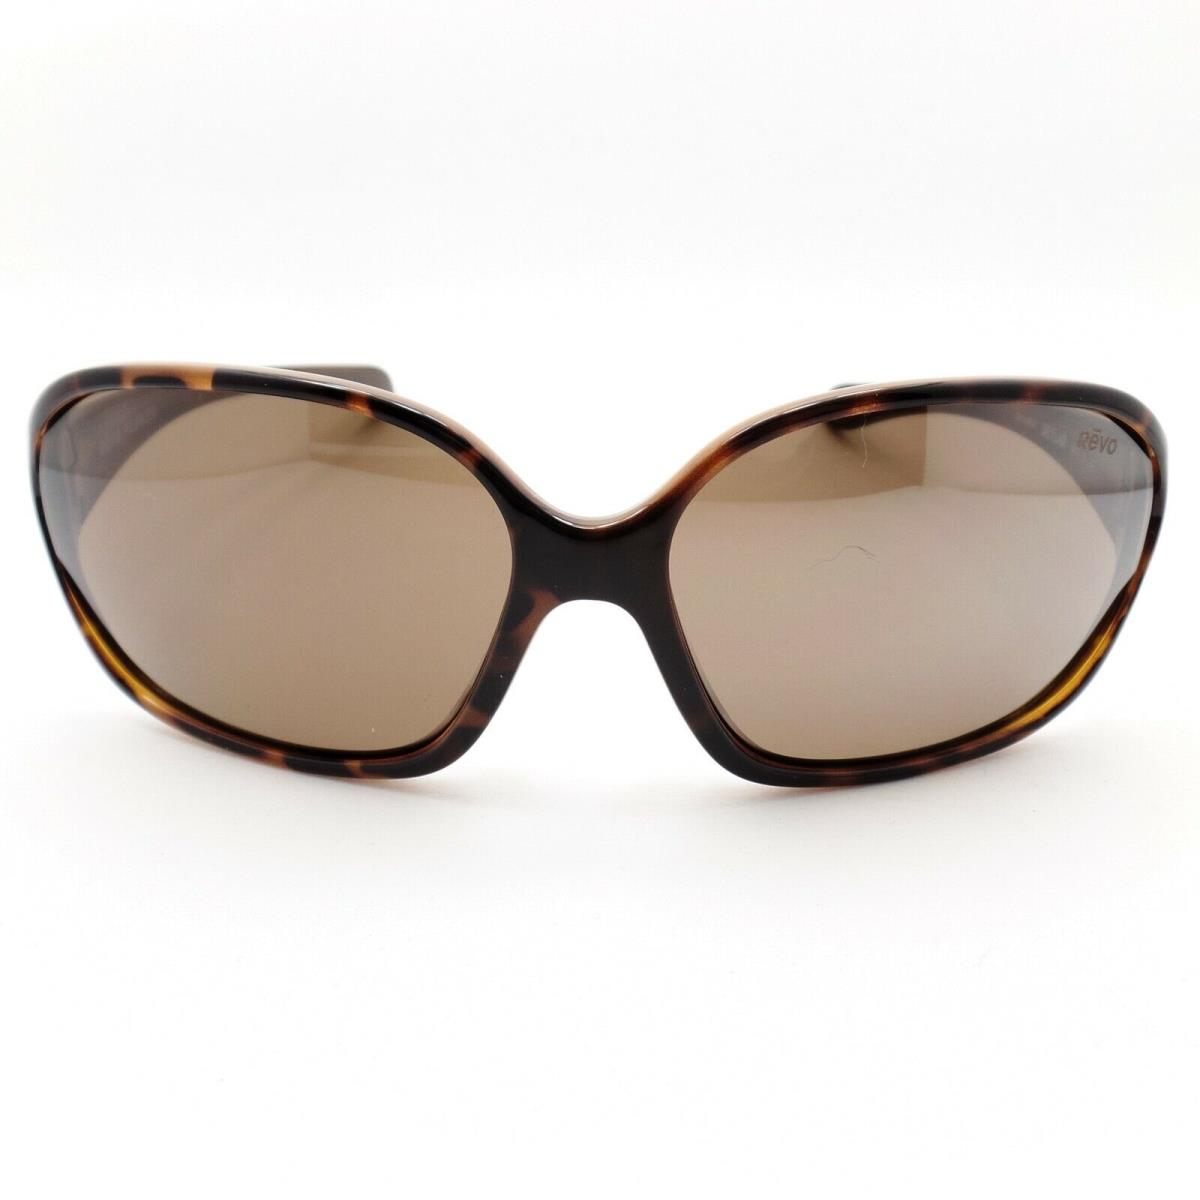 Revo sunglasses  - Tortoise Frame, Terra Lens